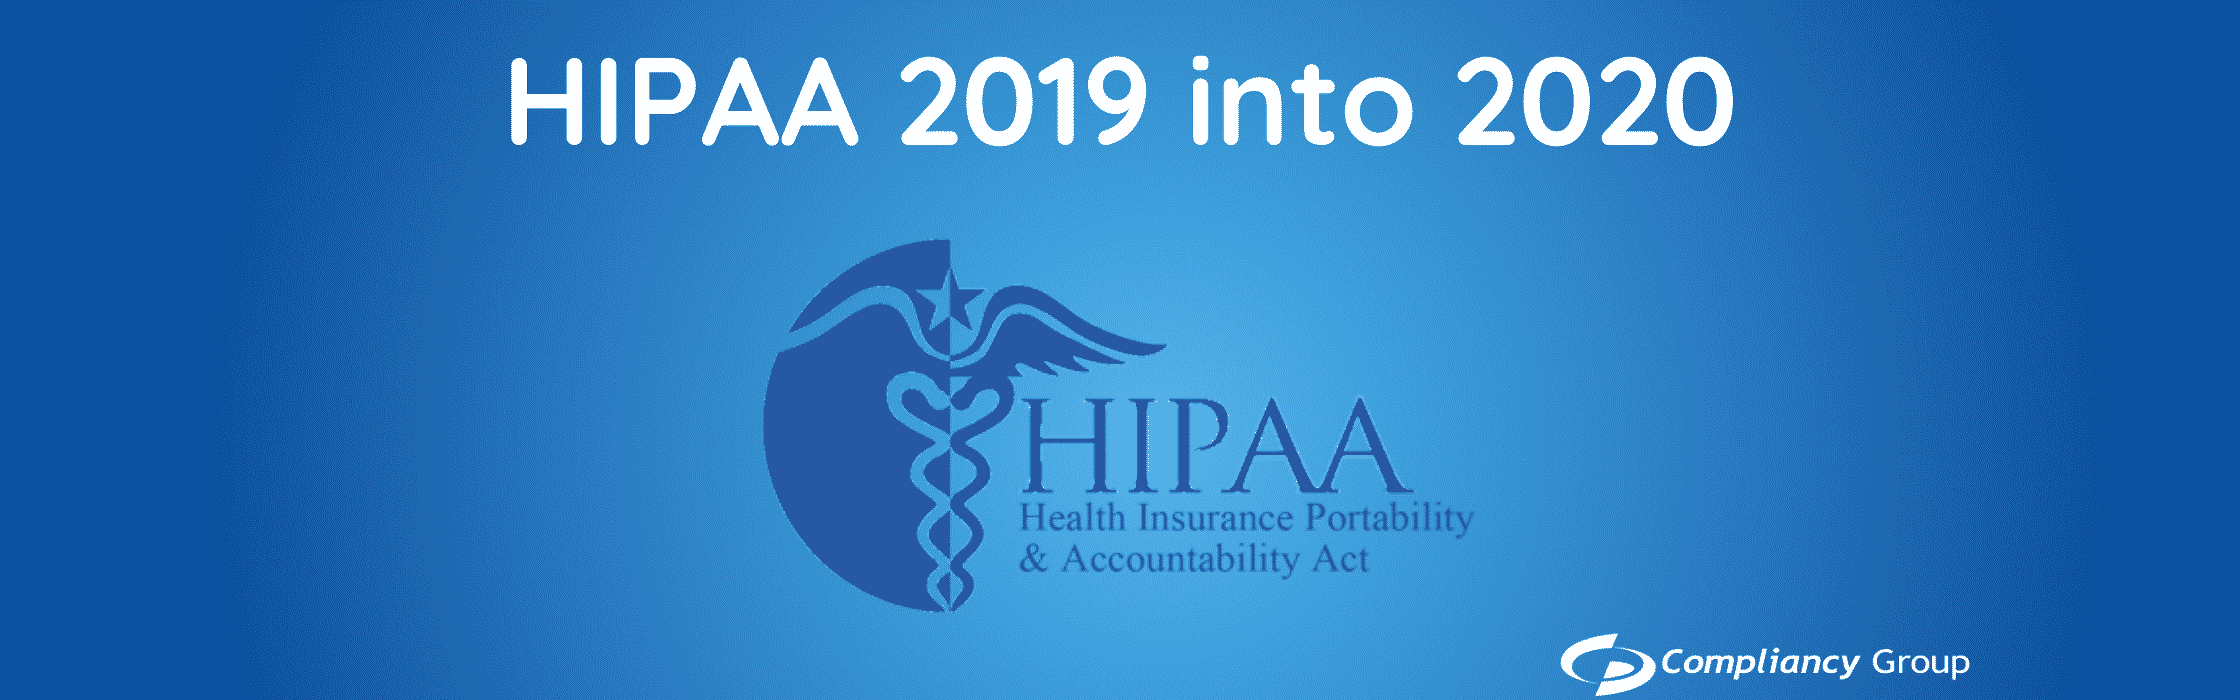 HIPAA 2019 into 2020